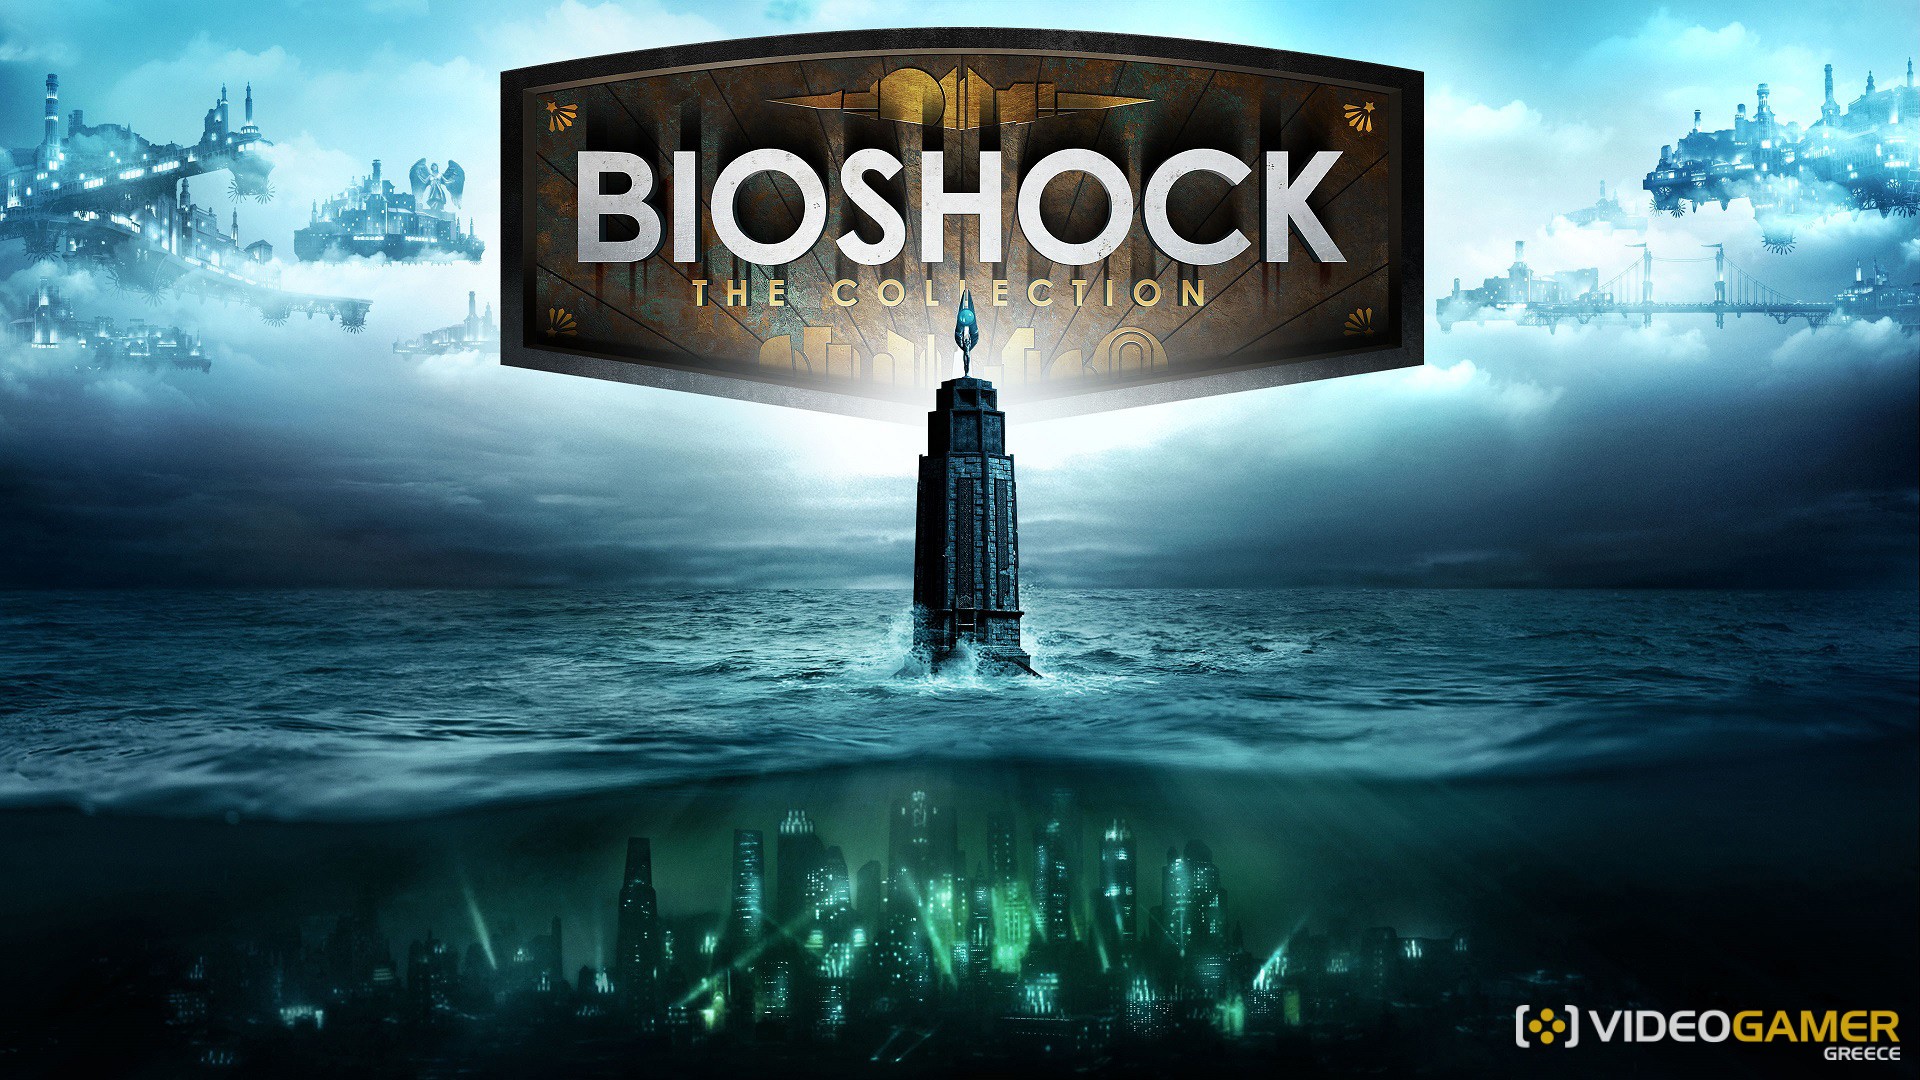 bioshock cover